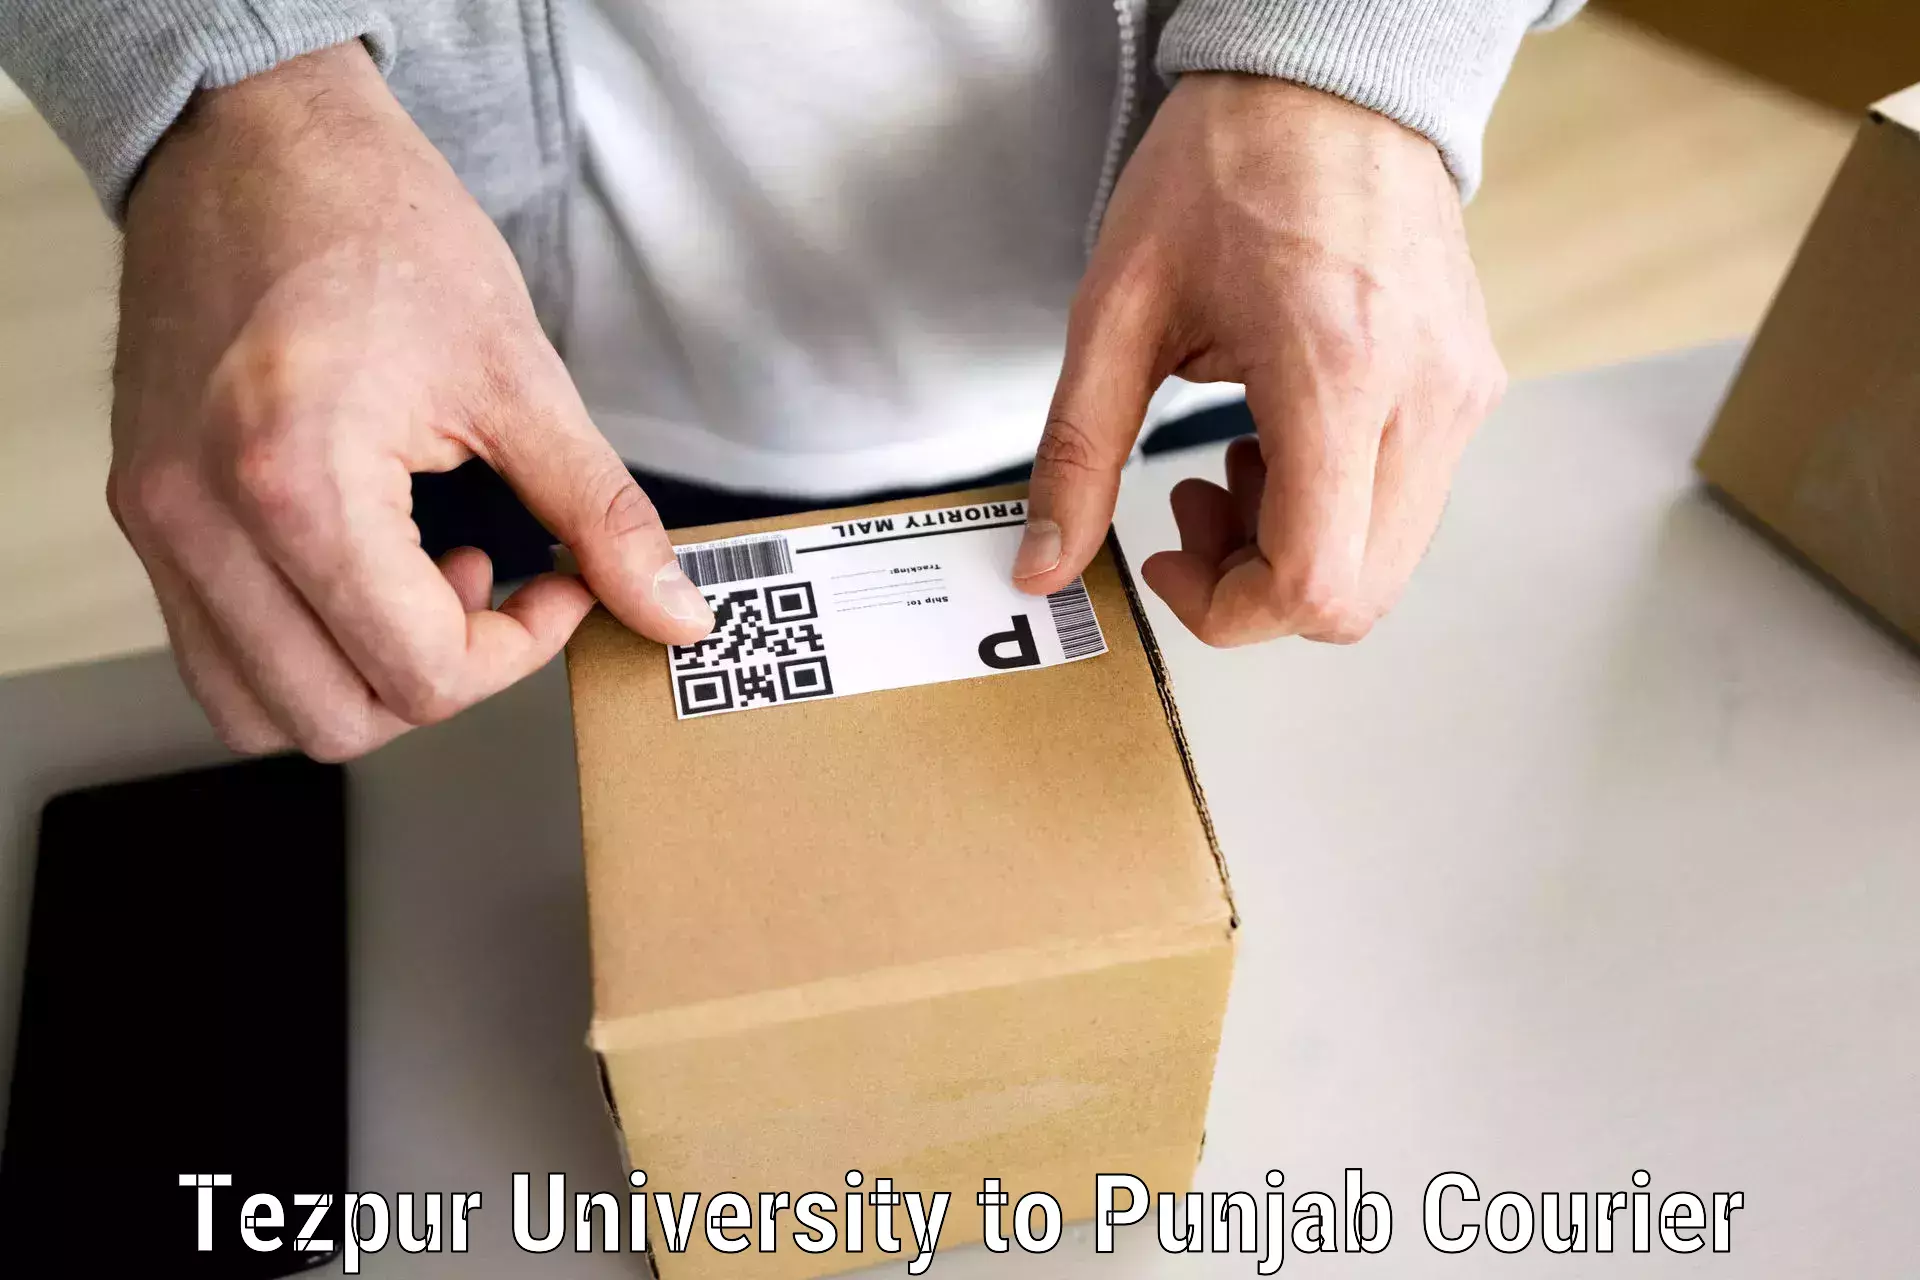 Furniture moving experts Tezpur University to Fatehgarh Sahib